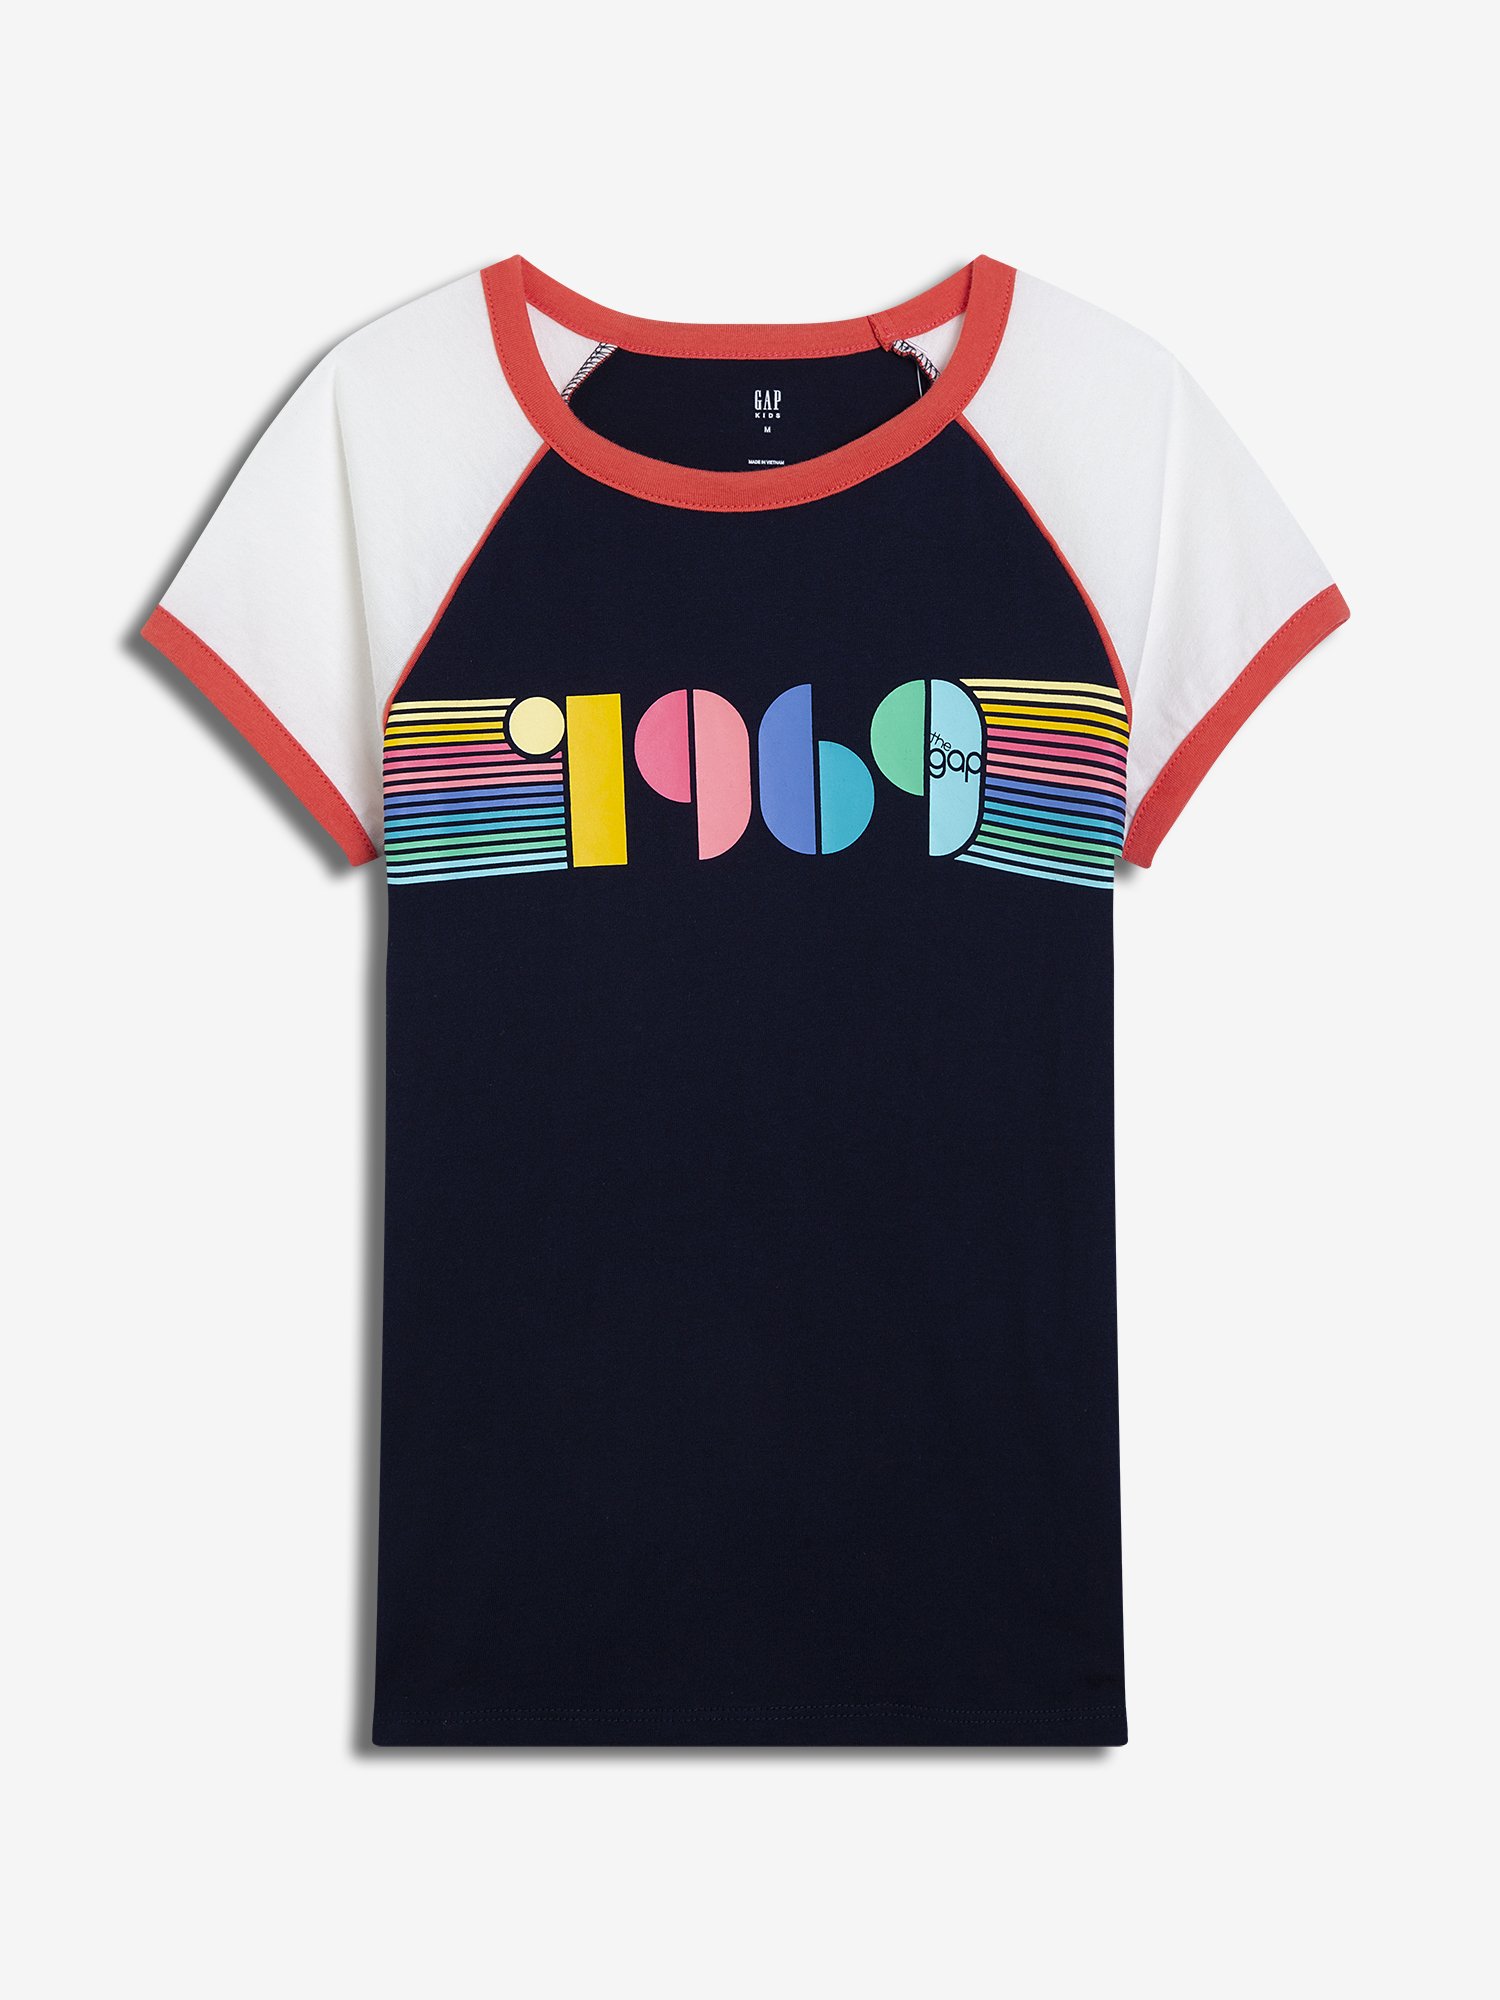 Kız Çocuk Grafik Baskılı T-Shirt product image